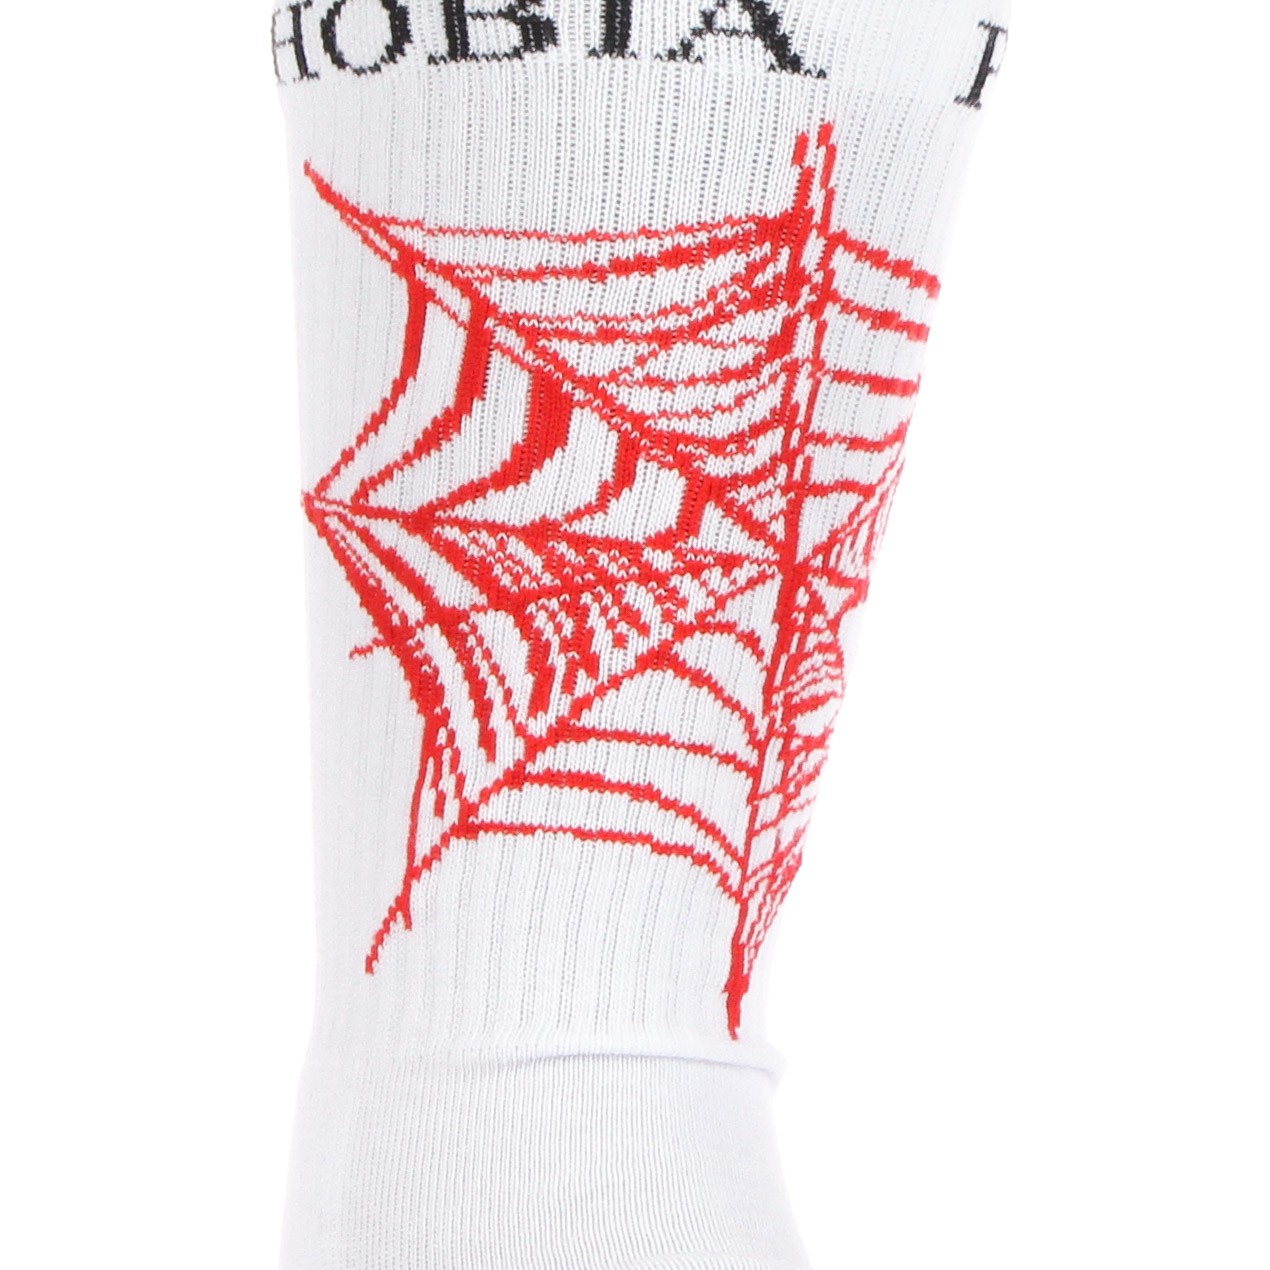 Phobia, Calza Media Uomo Red Webcob Socks, White/red